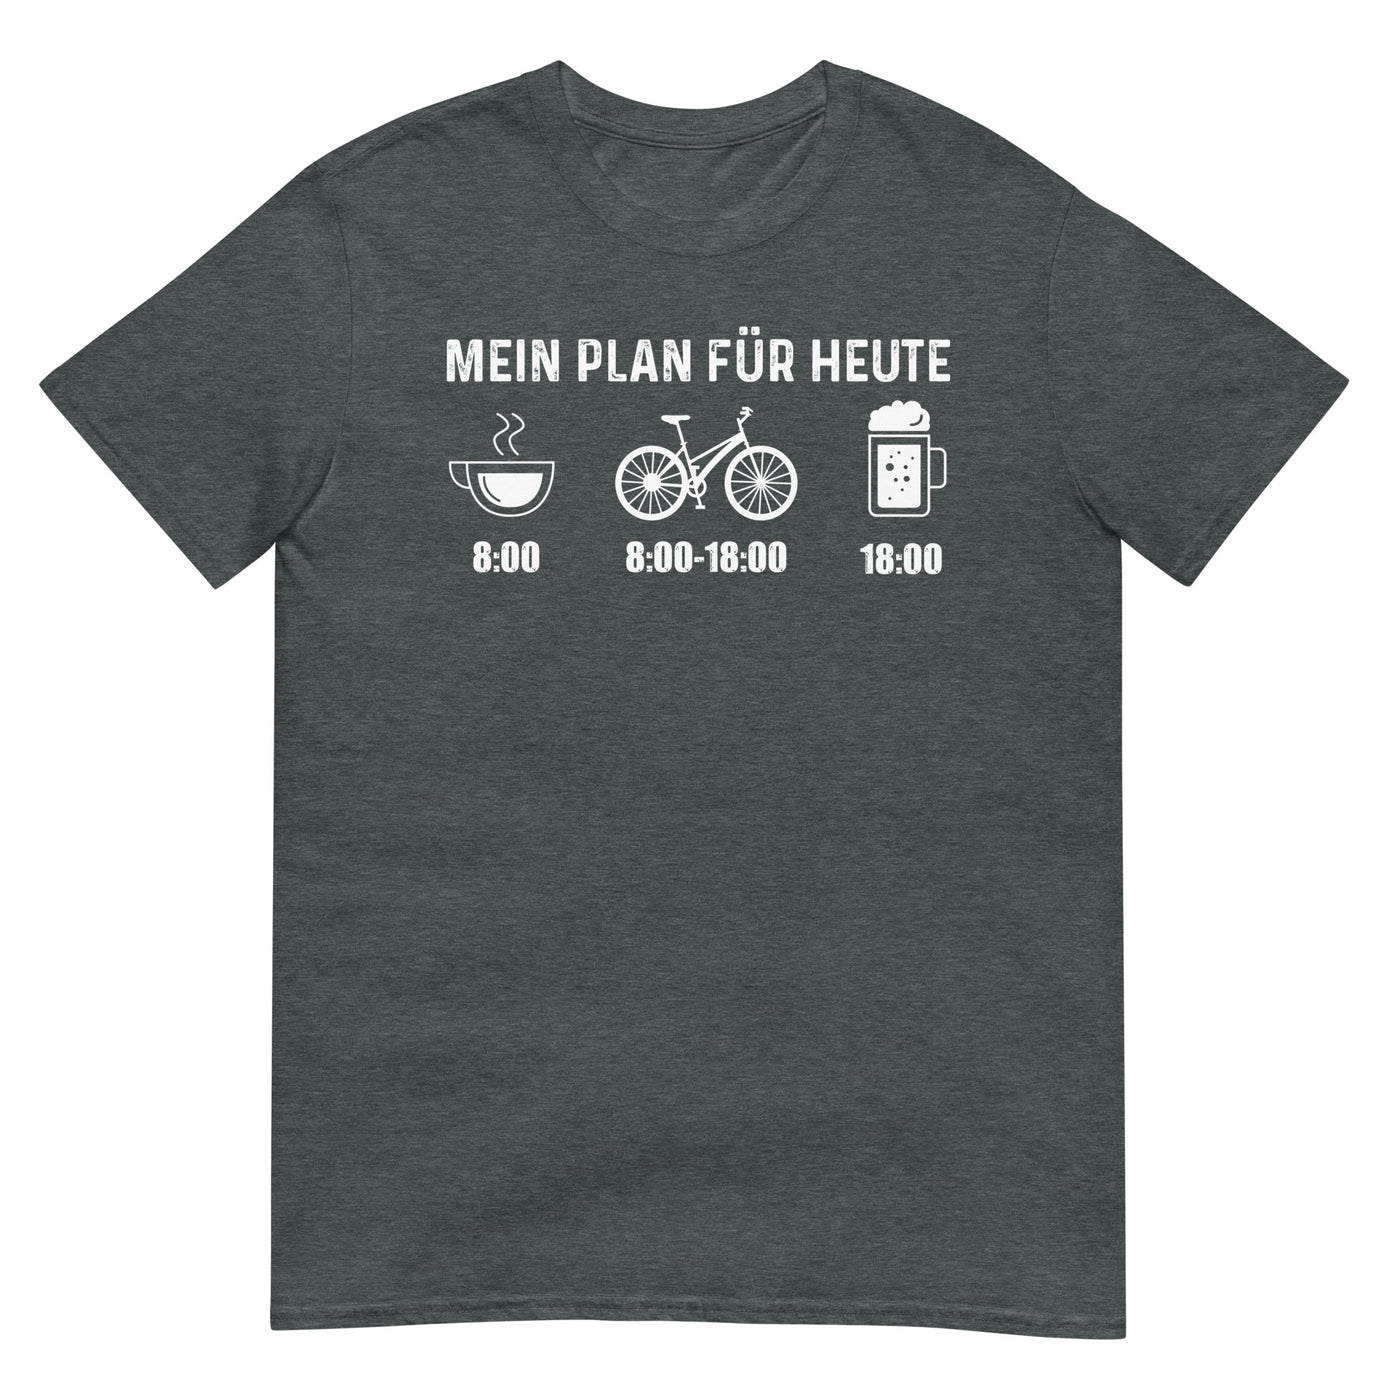 Mein Plan Für Heute - T-Shirt (Unisex) fahrrad xxx yyy zzz Dark Heather